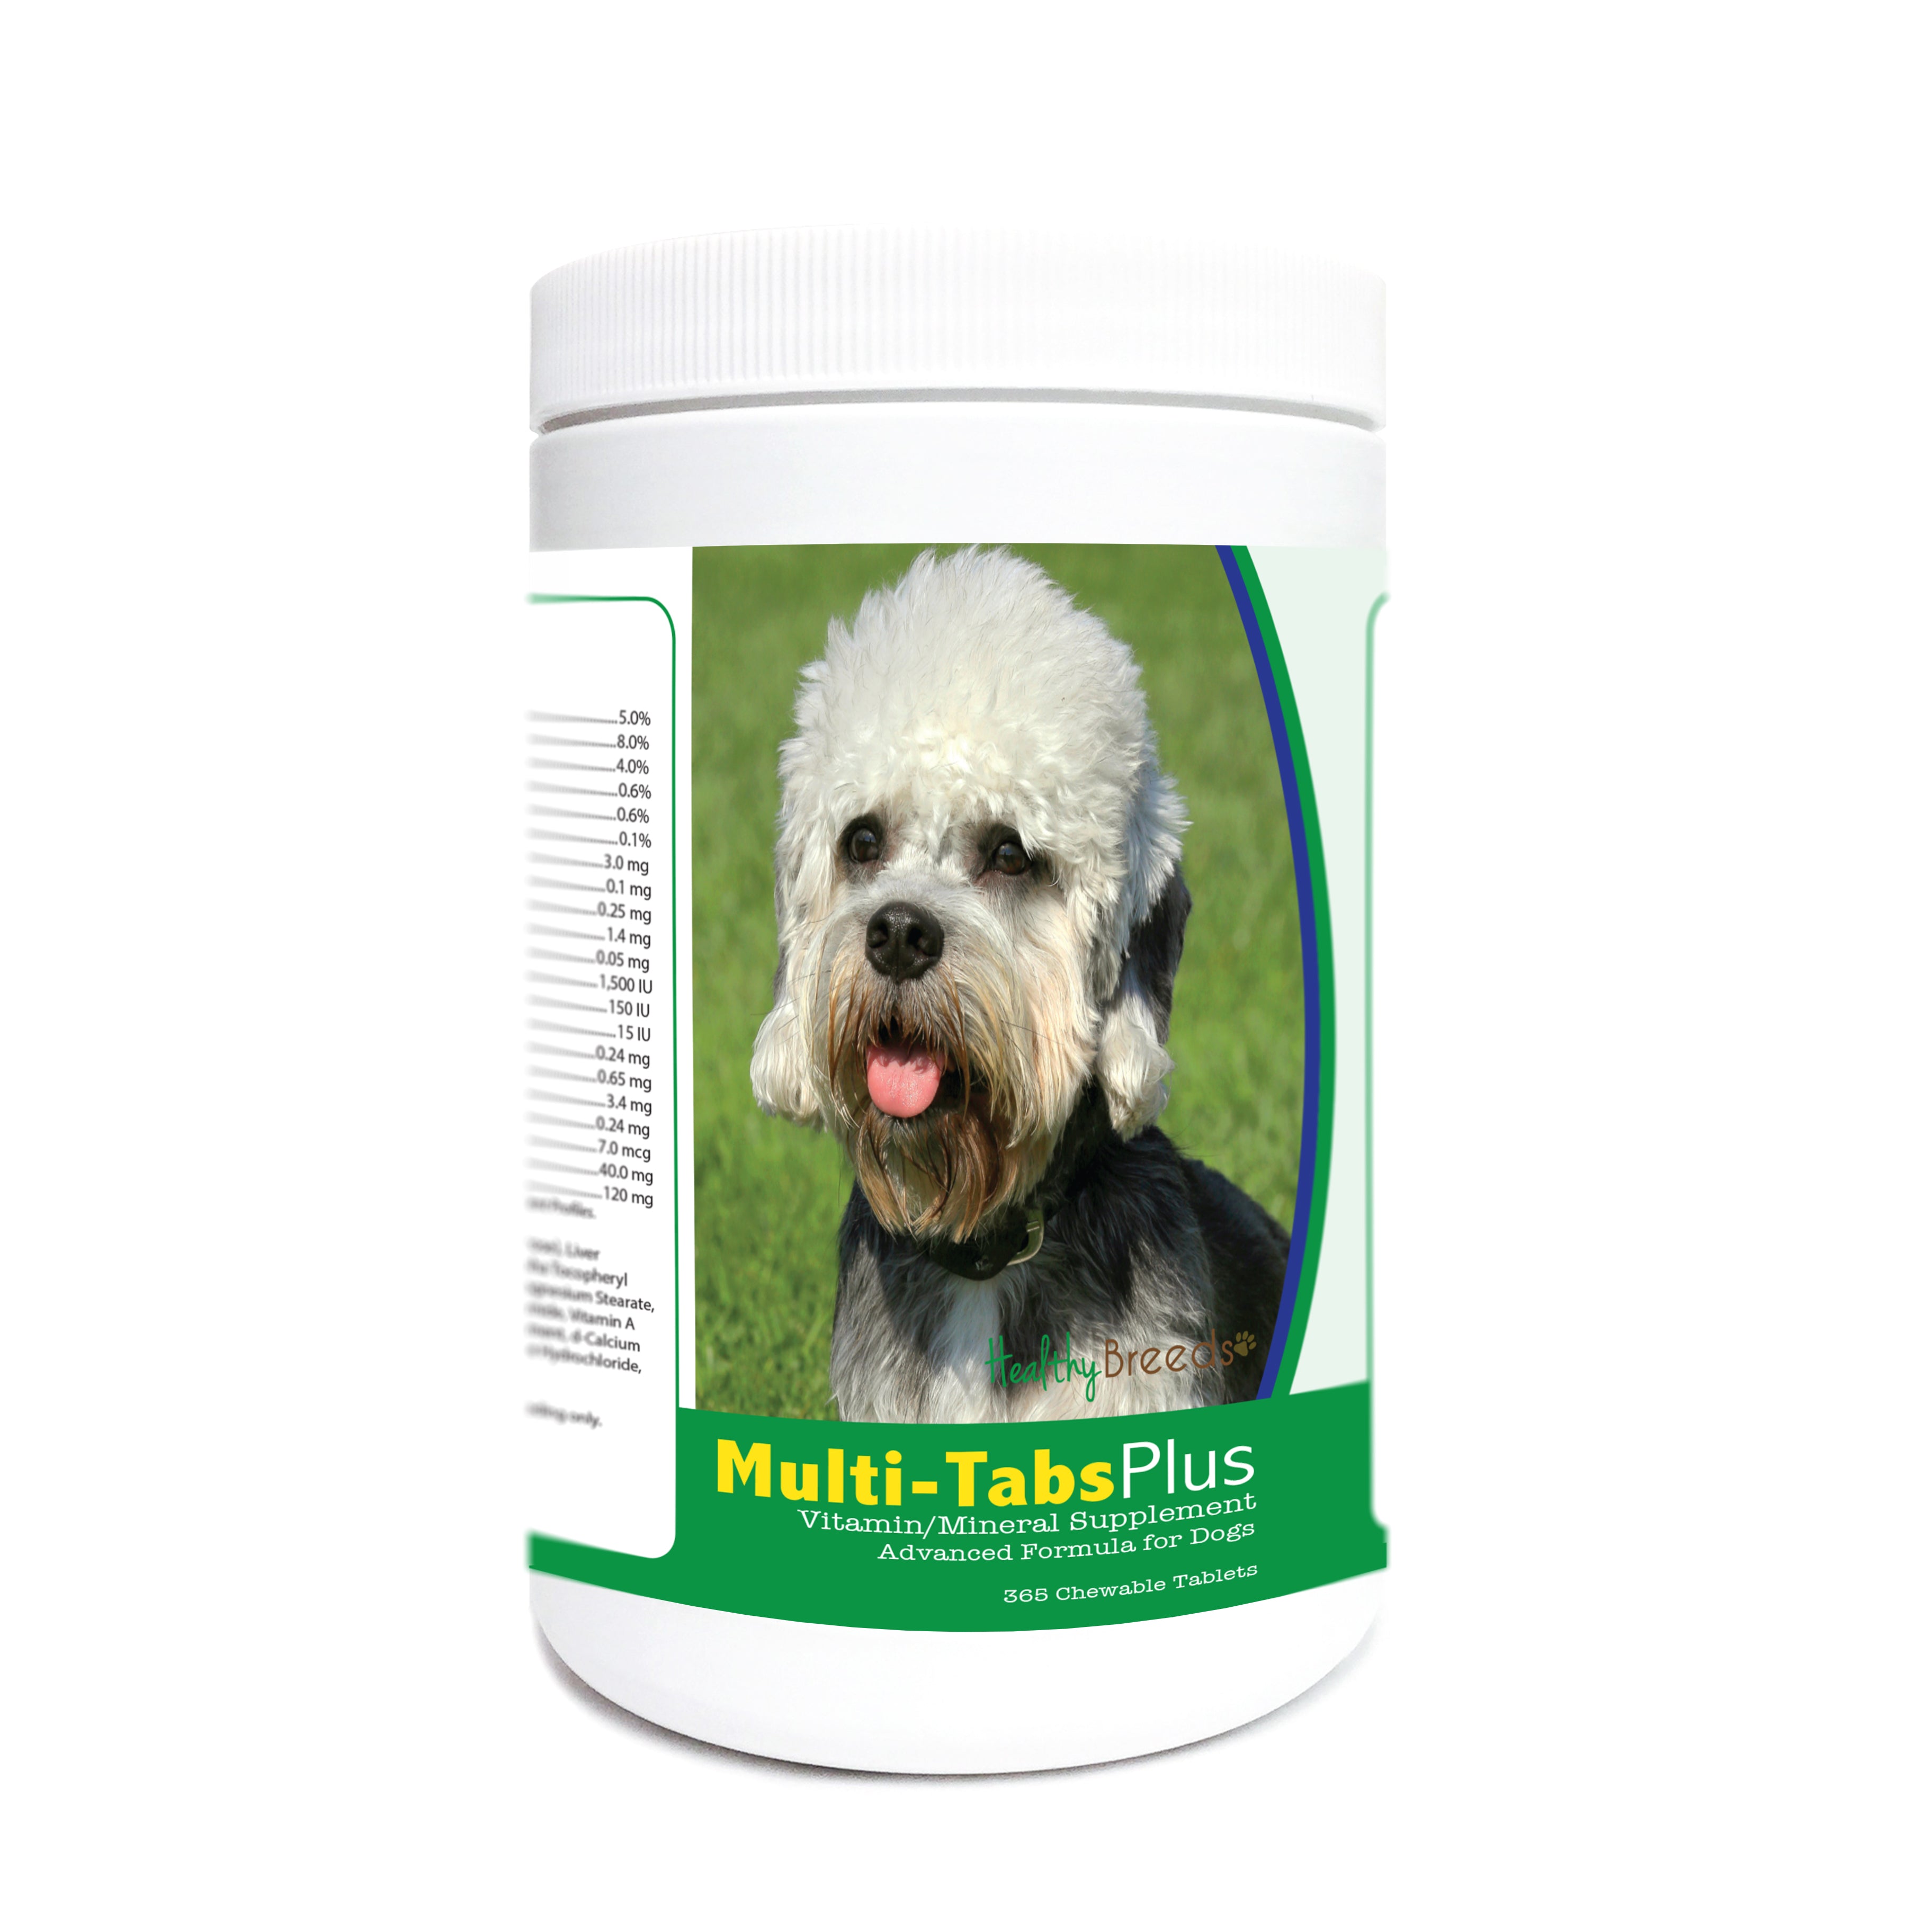 Dandie Dinmont Terrier Multi-Tabs Plus Chewable Tablets 365 Count